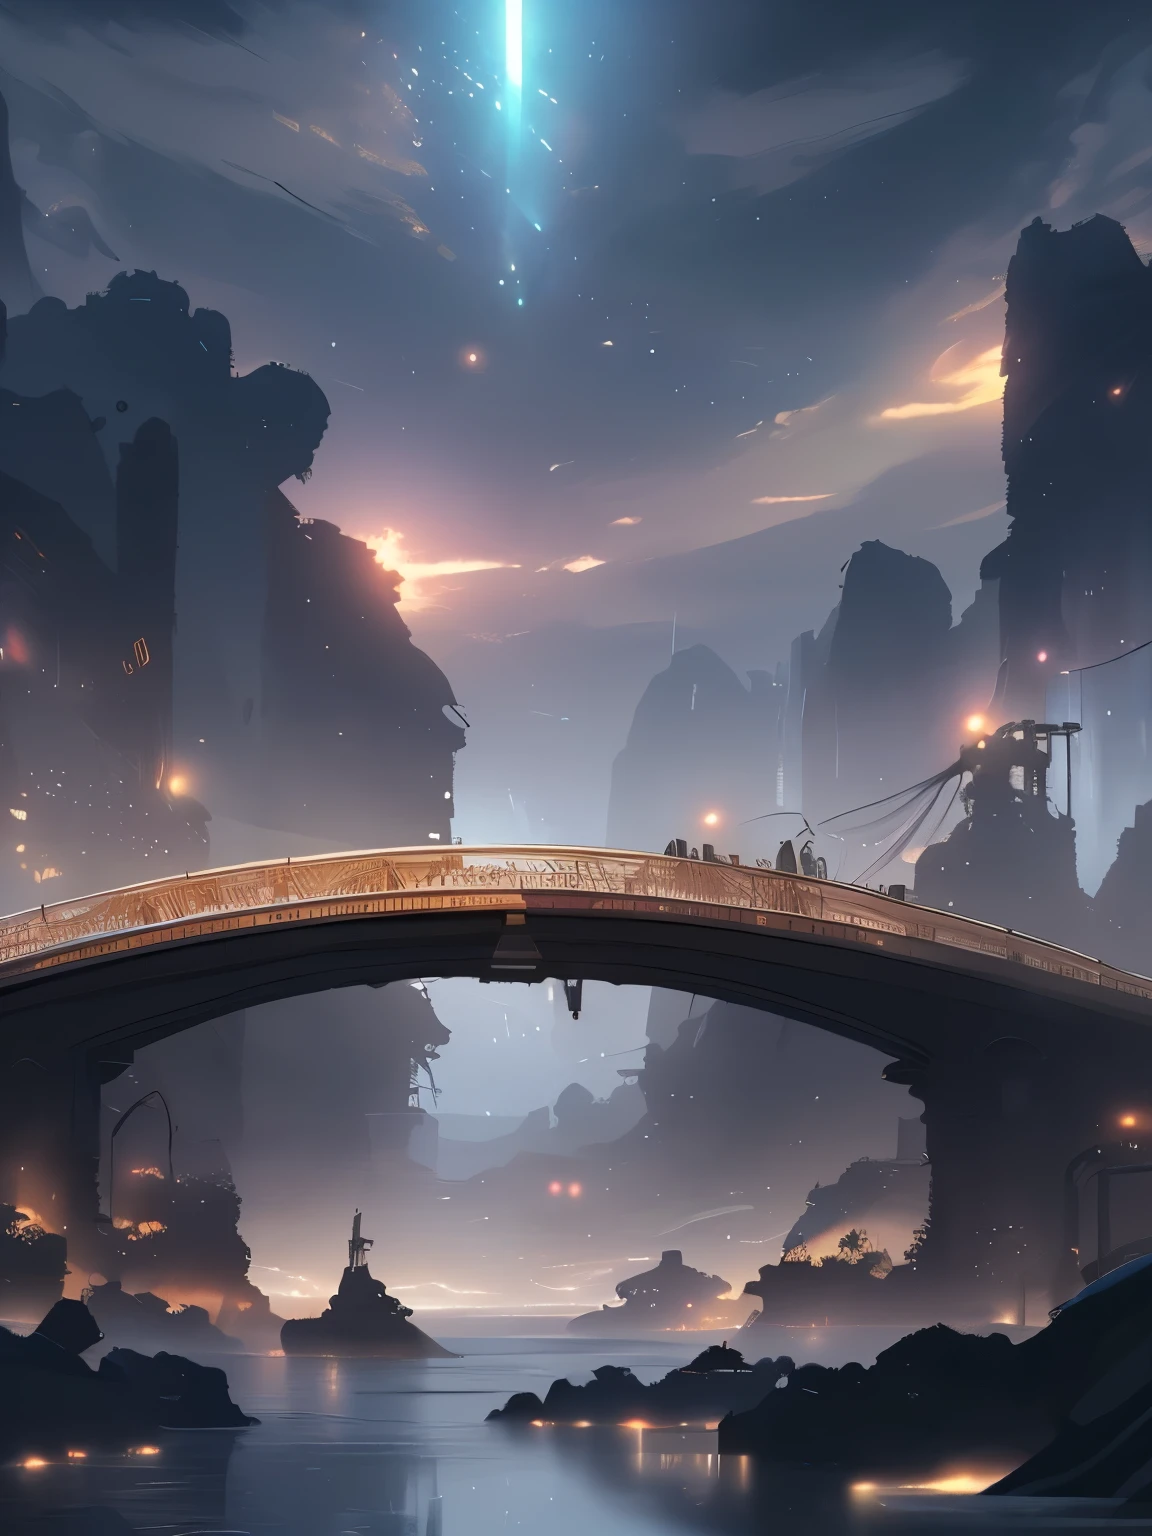 Eine Brücke, die die Welt verbindet, wachsen, Schließen, ausführlich, scharfer Fokus, elegant, Very ausführlich, Figur, kompliziert, Schön, Trend Art Station, pixiv, Digital Art, von Jordan Grimmer und Greg Rutkowski, Wow, Studio Ghibli, Final Fantasy